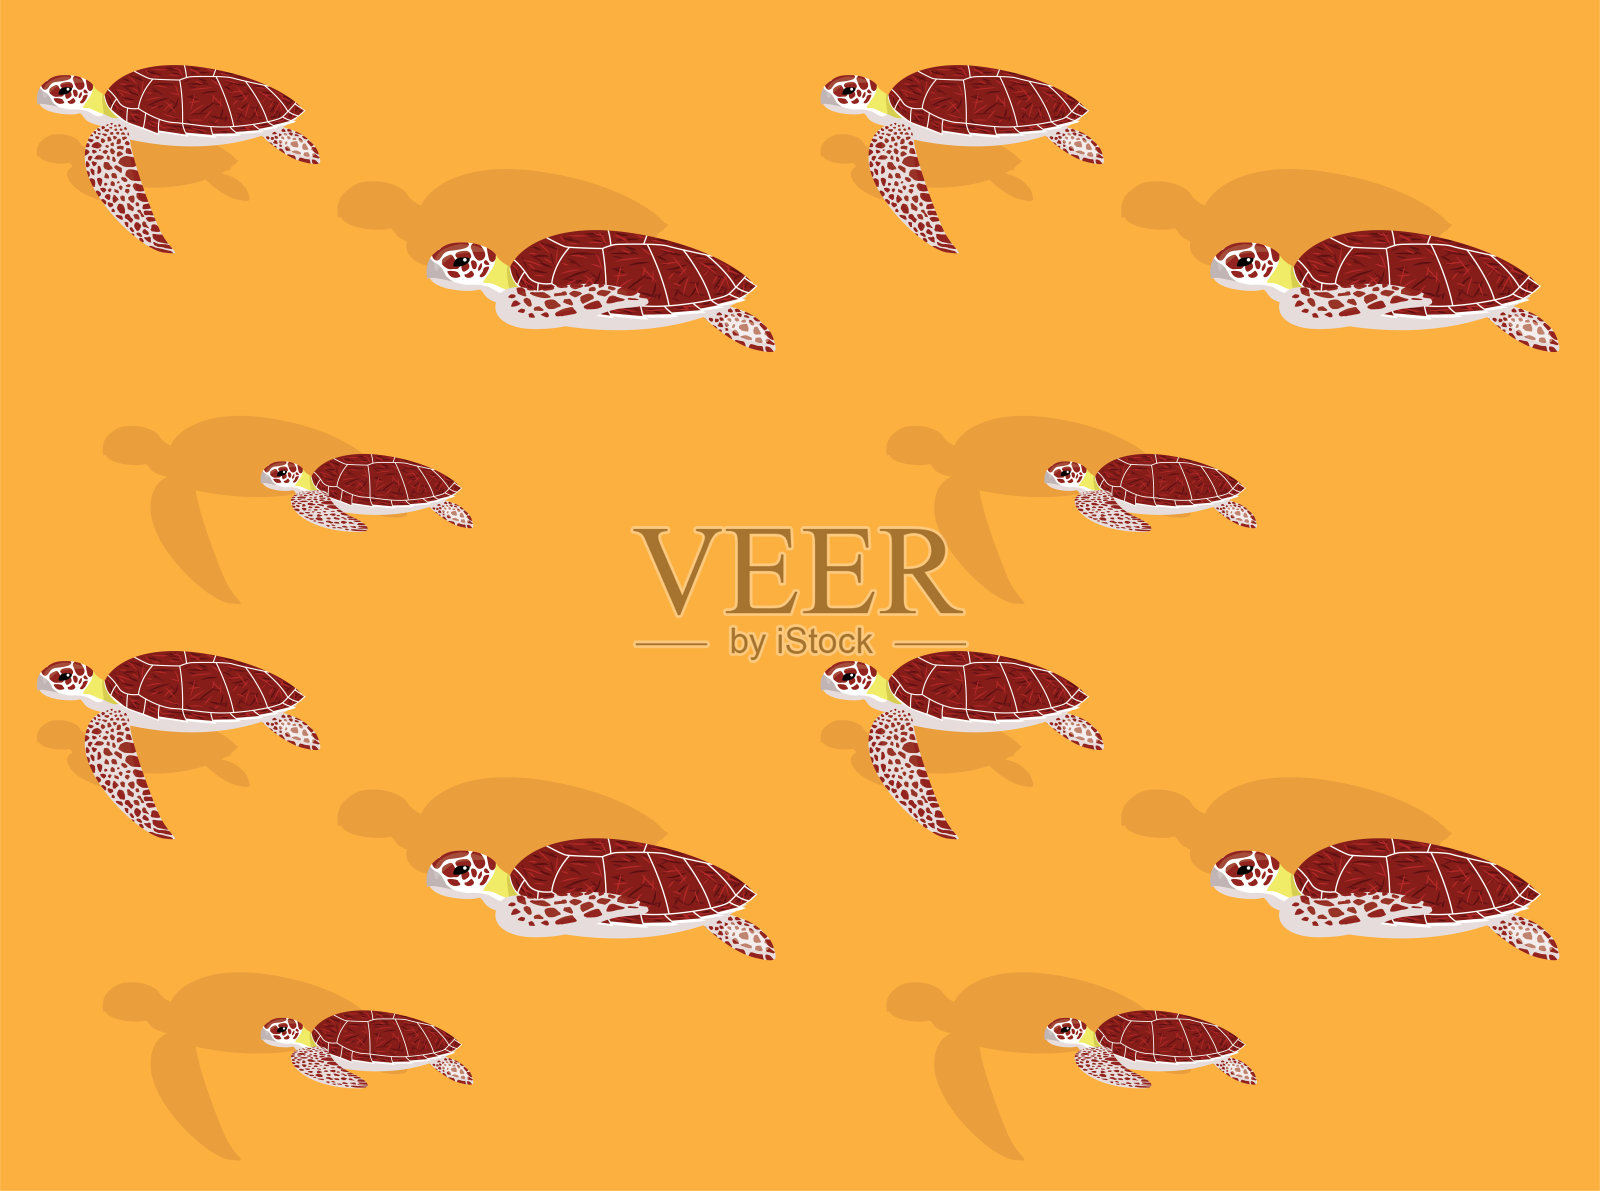 海龟玳瑁动画矢量无缝壁纸插画图片素材